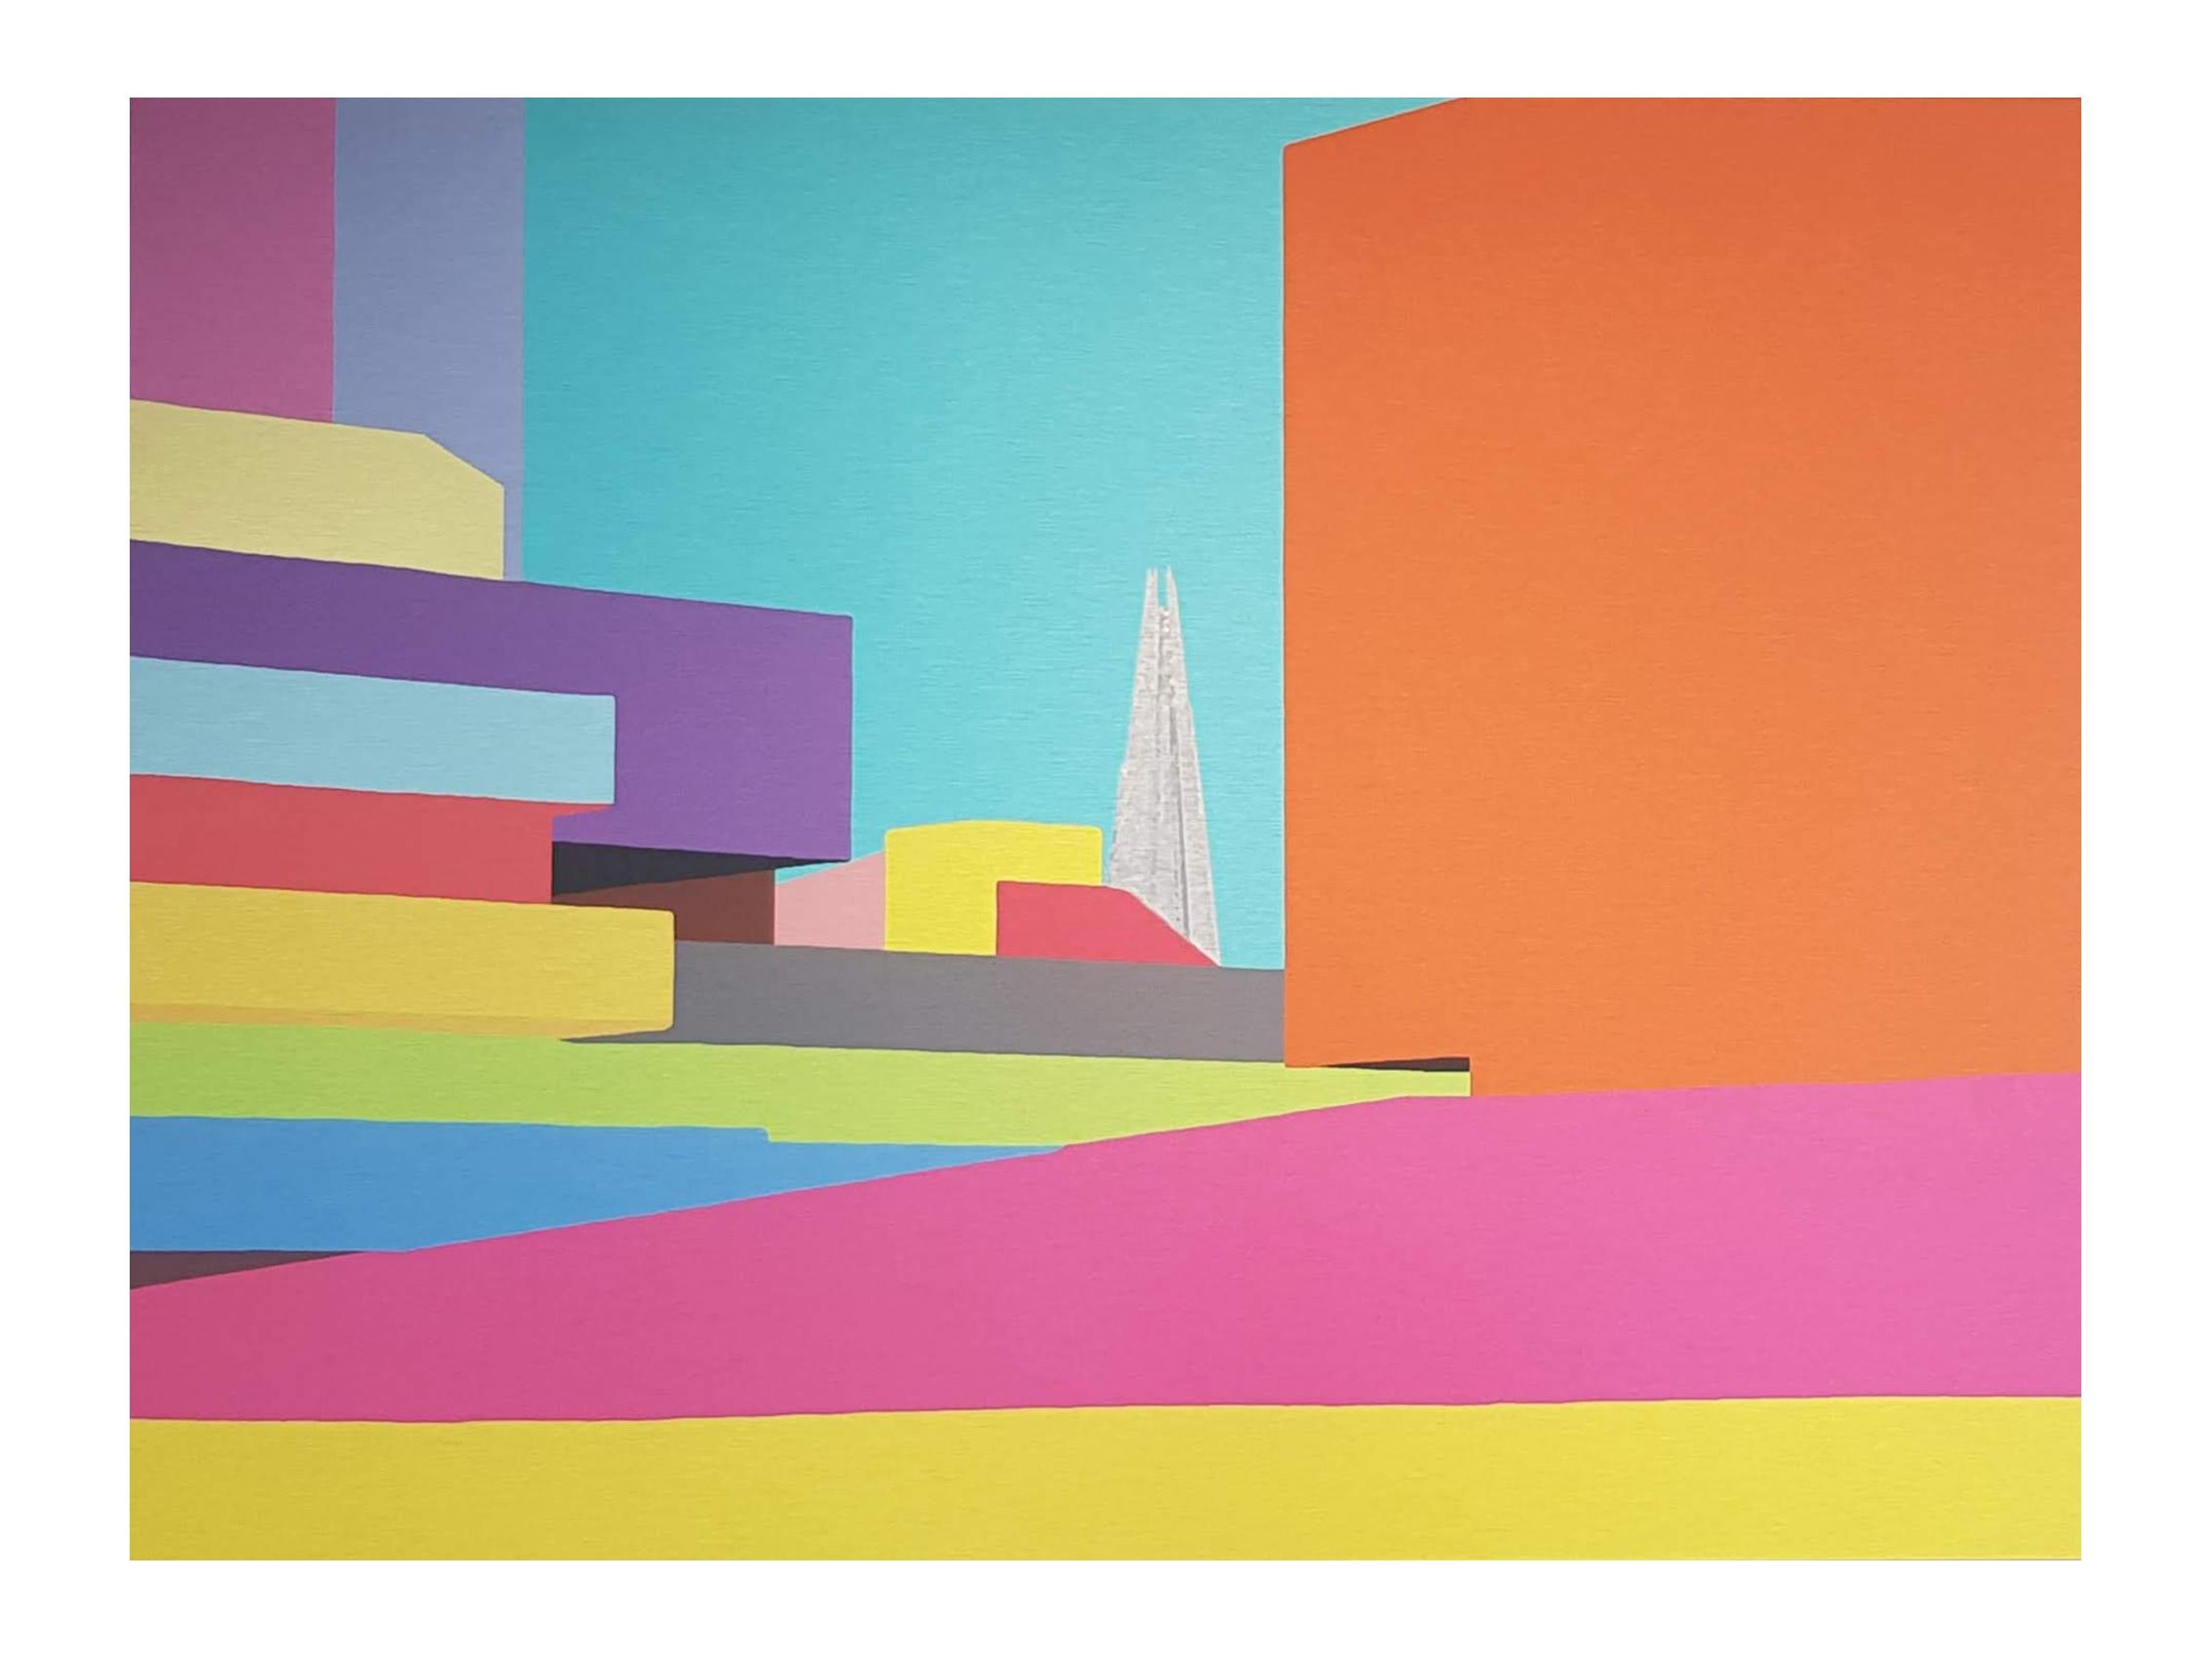 Nationales Theater, Farben – Print von Michael Wallner